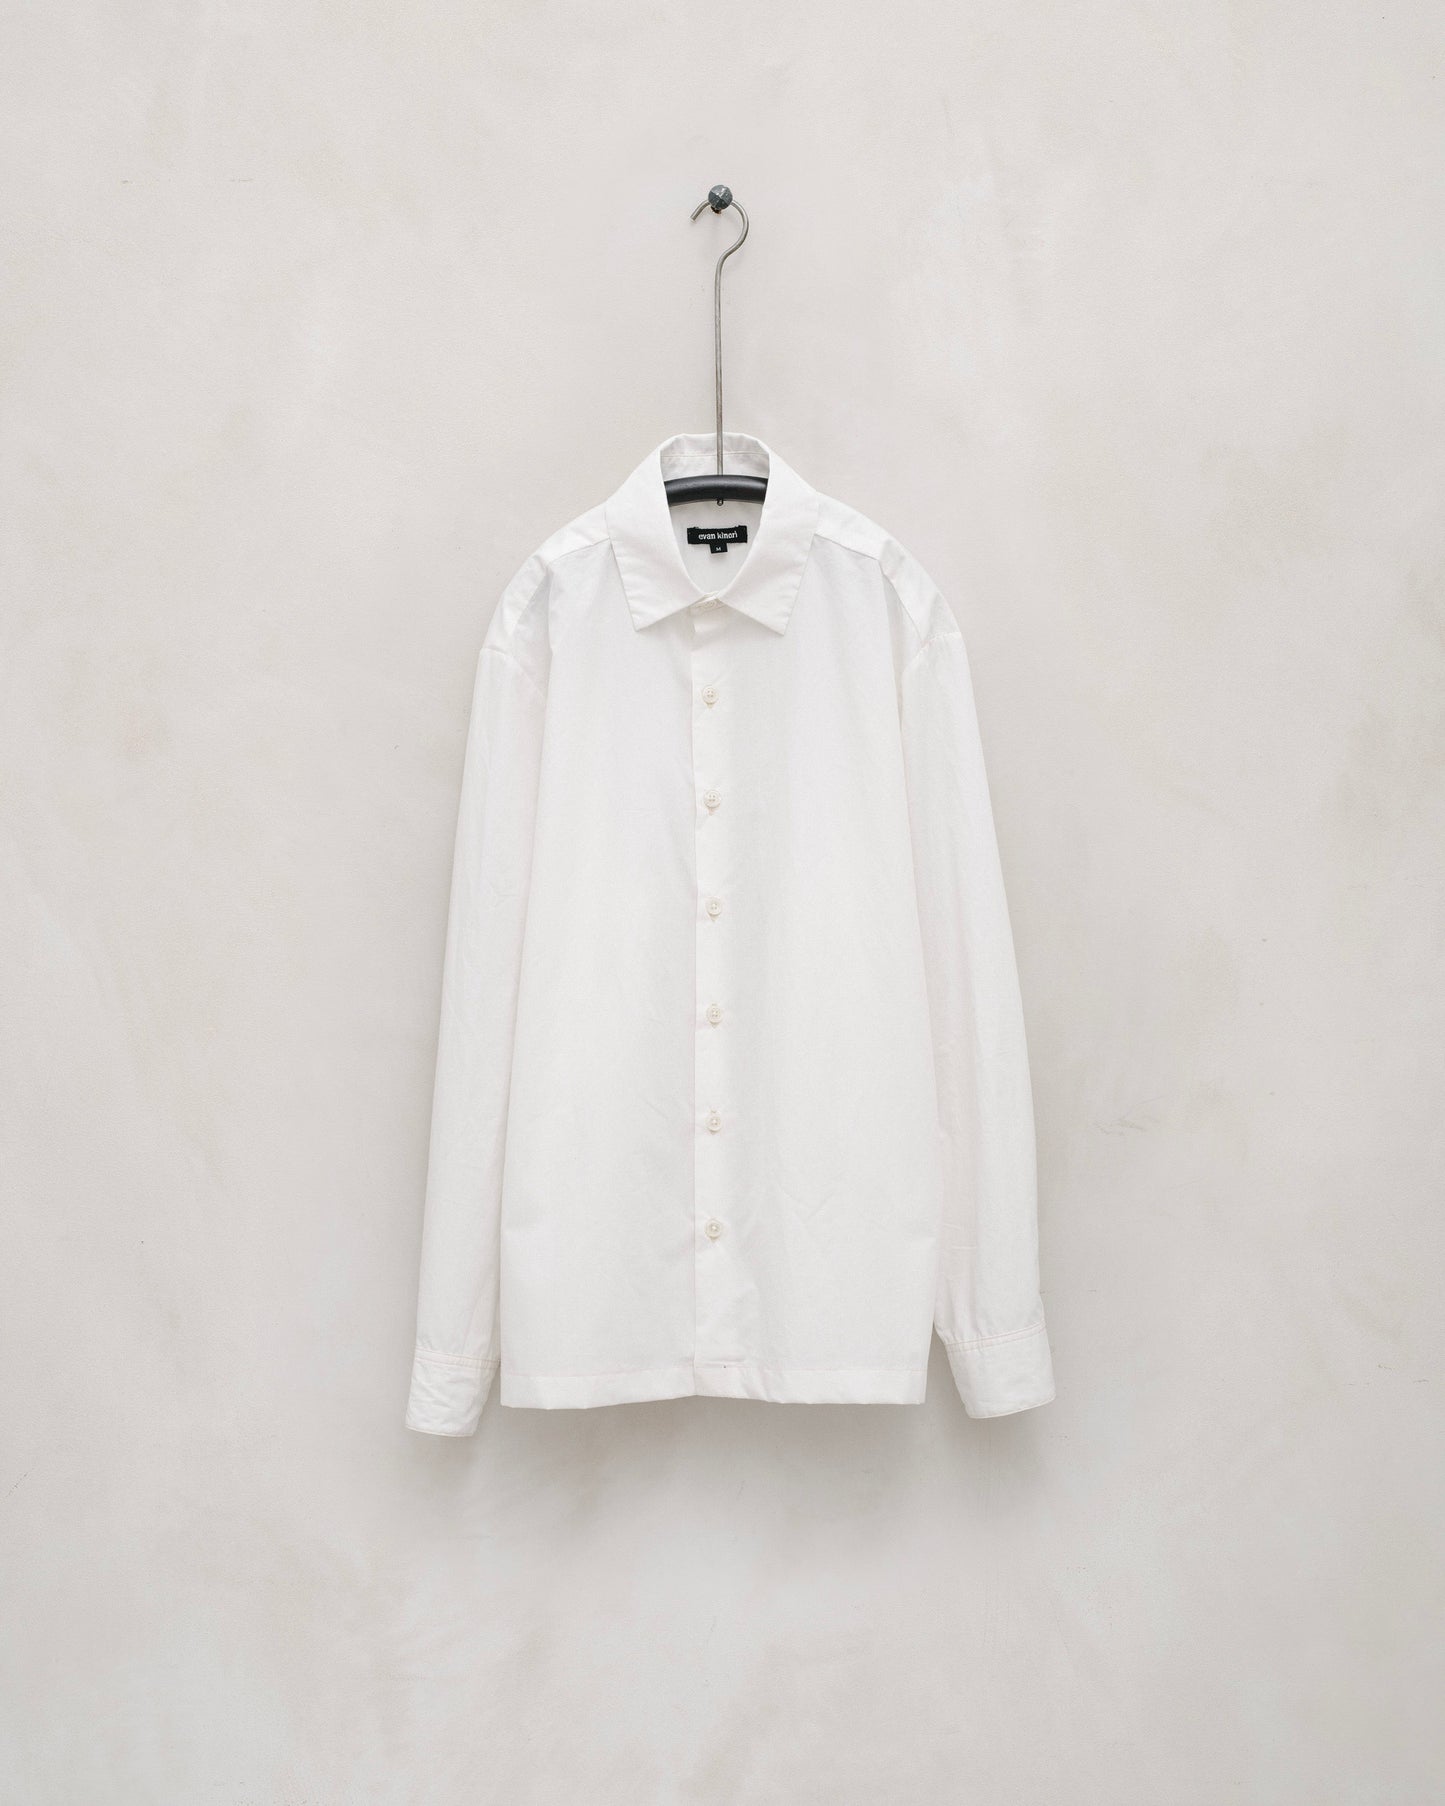 Flat Hem Shirt - Organic Cotton/Hemp Typewriter Cloth, White